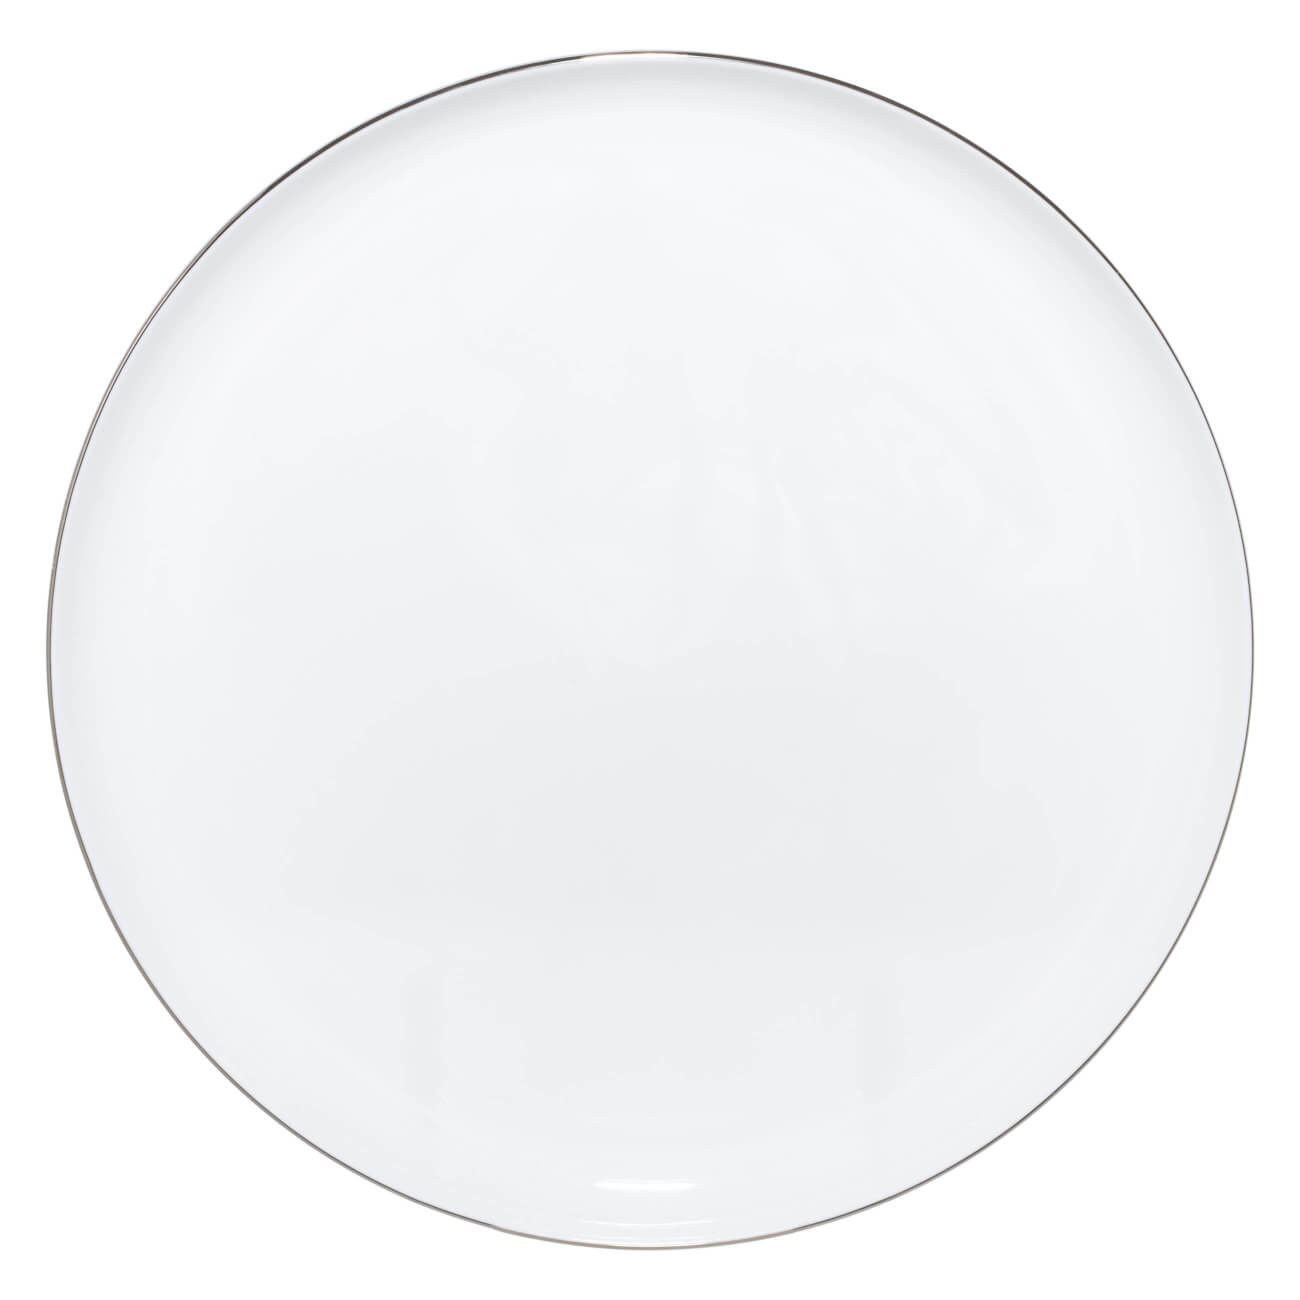 Тарелка обеденная, 28 см, фарфор F, Antarctica тарелка обеденная luminarc эвридэй g0564 24см